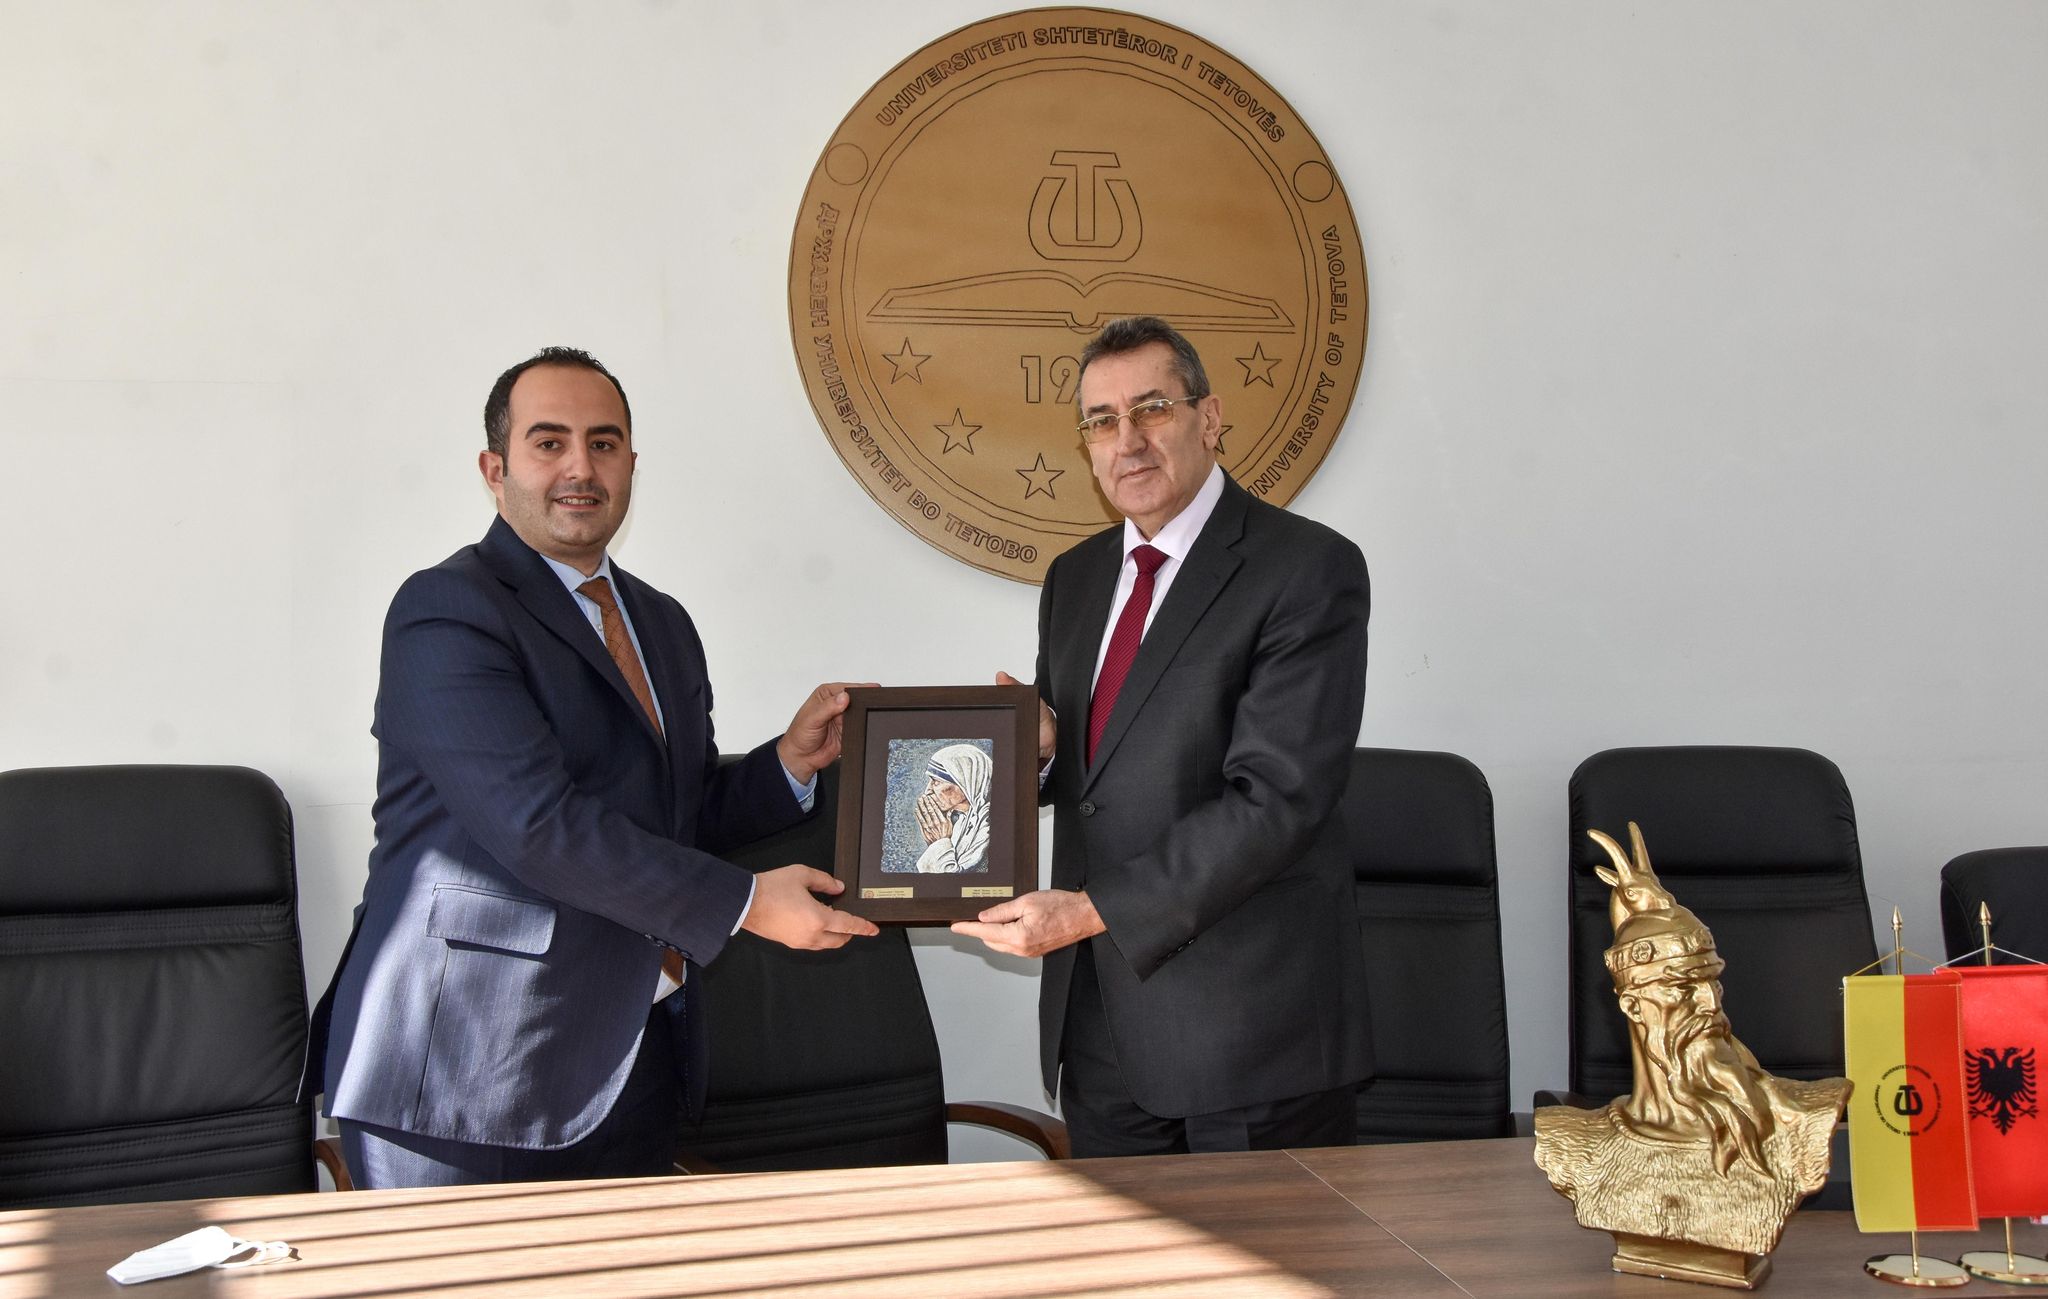 Ministri i Arsimit dhe Shkencës, Jeton Shaqiri e vizitoi Universitetin e Tetovës